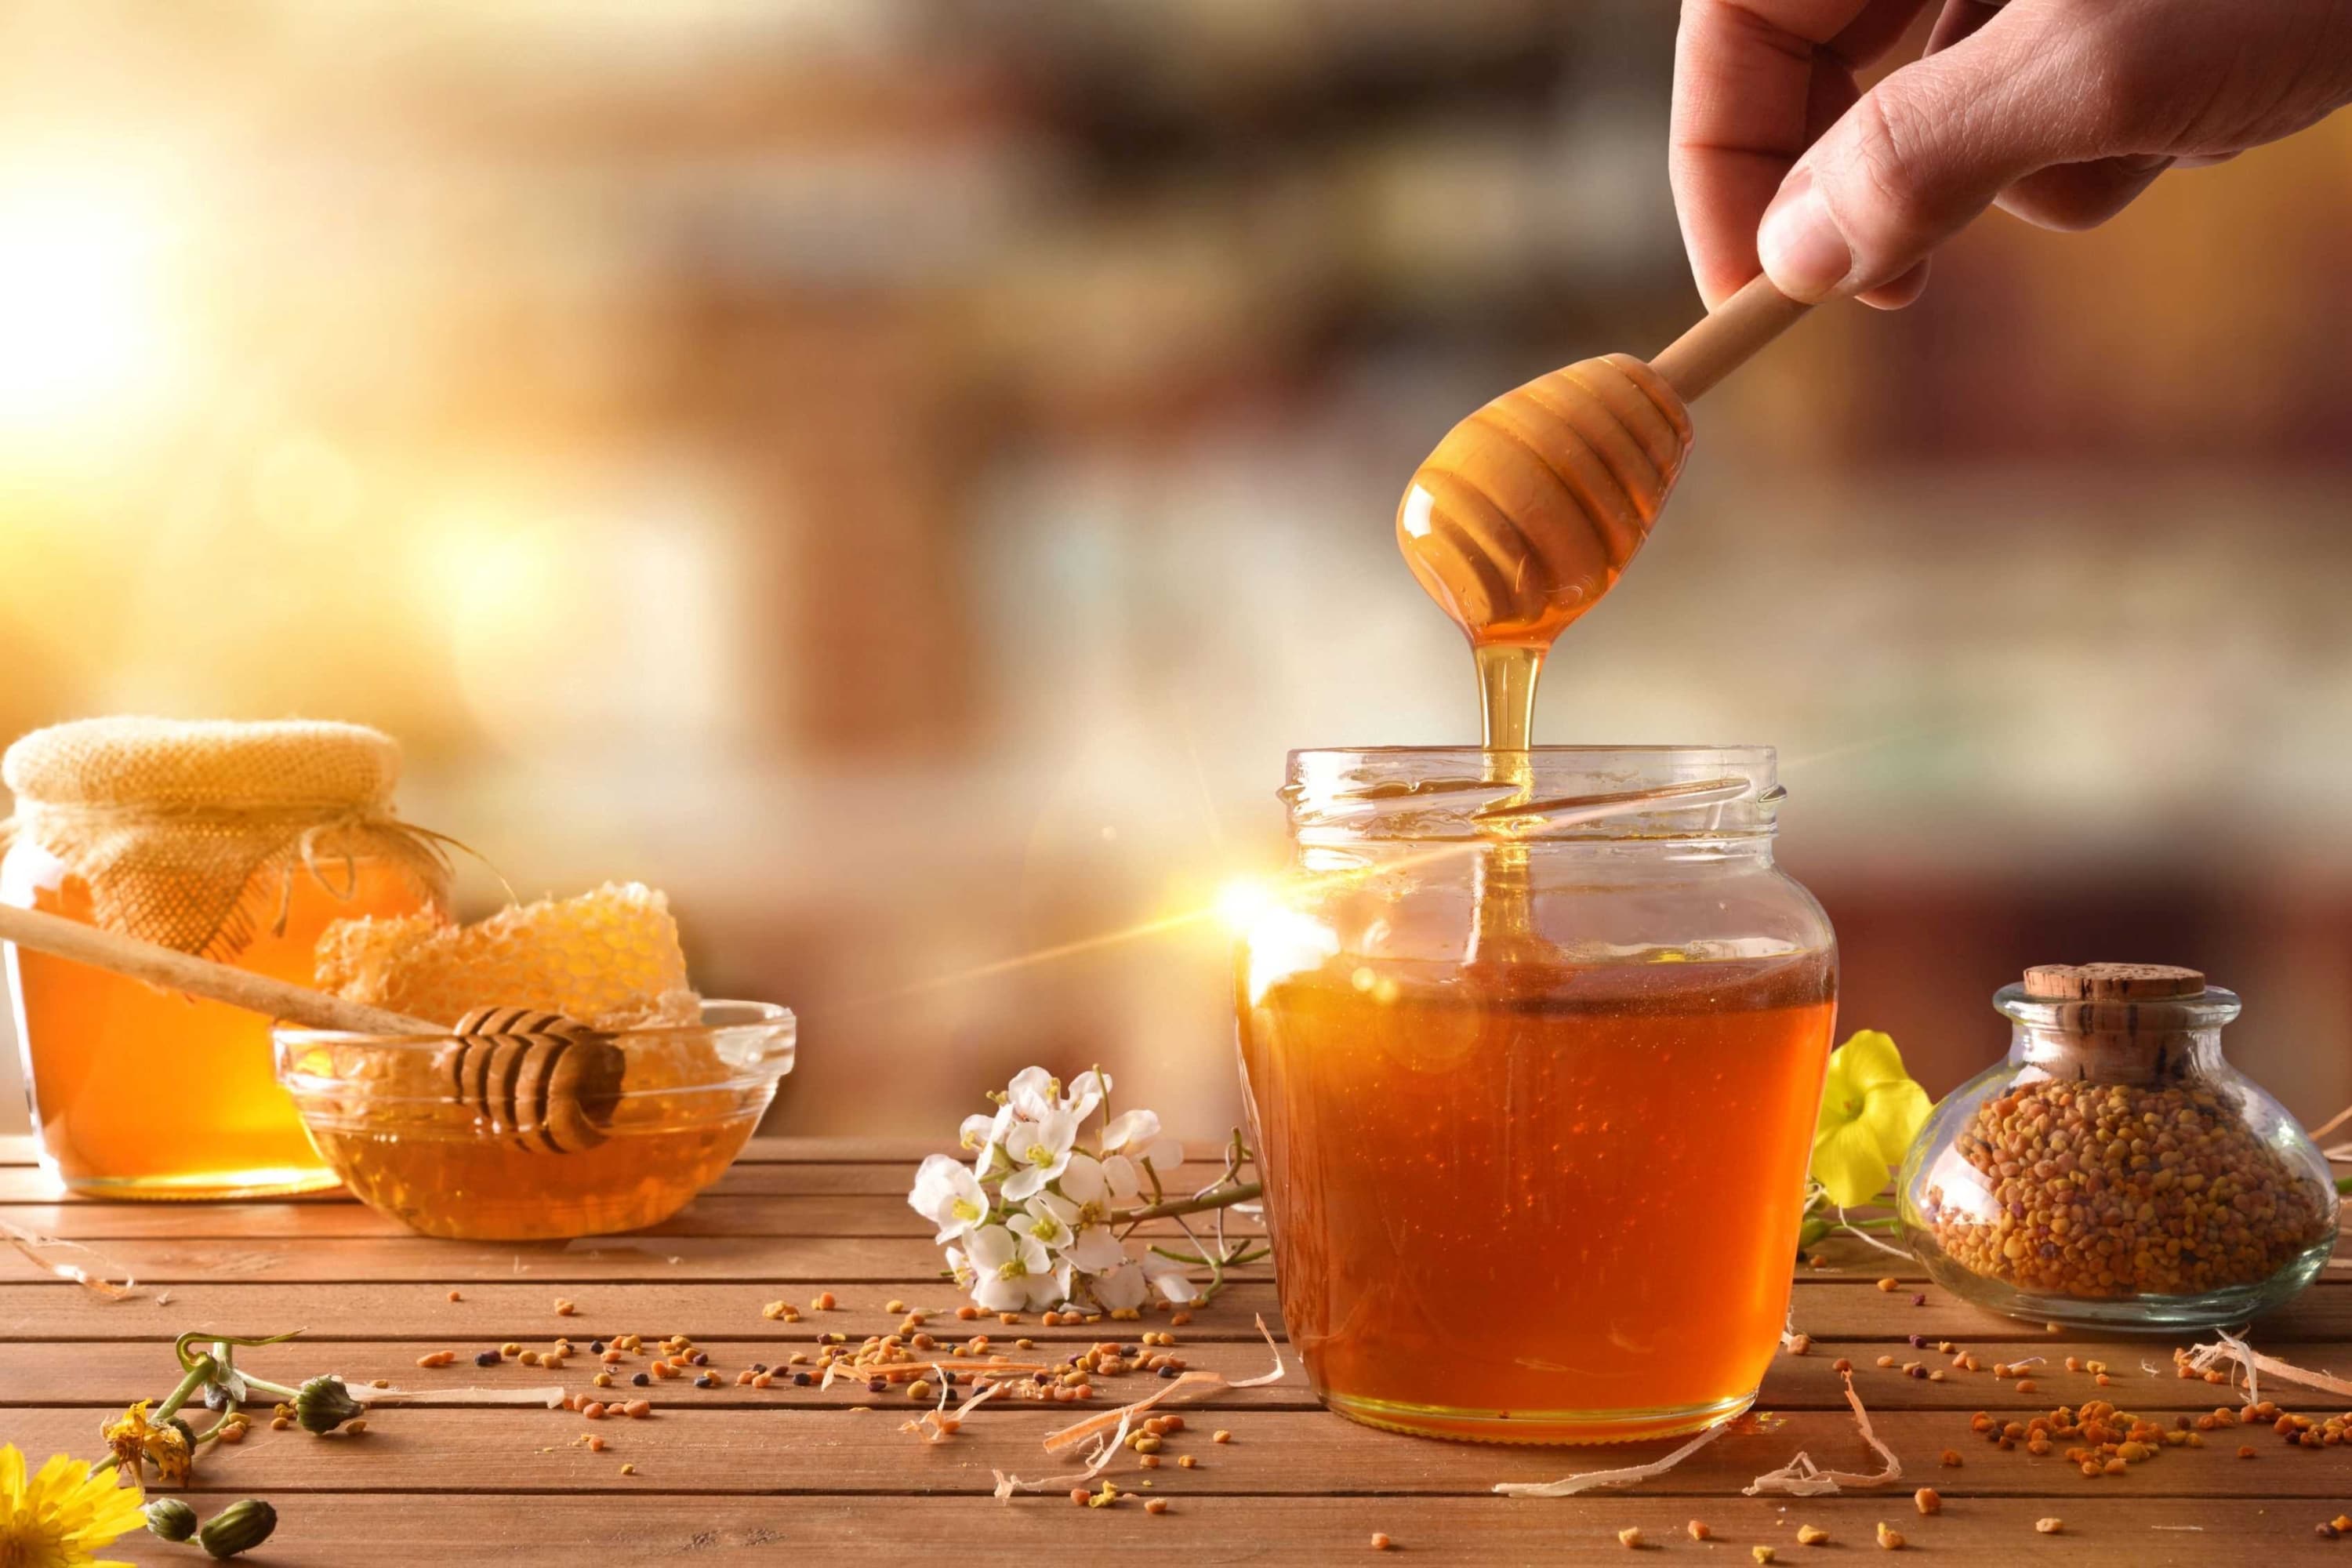 Conserver le miel et limiter les risques d'altération